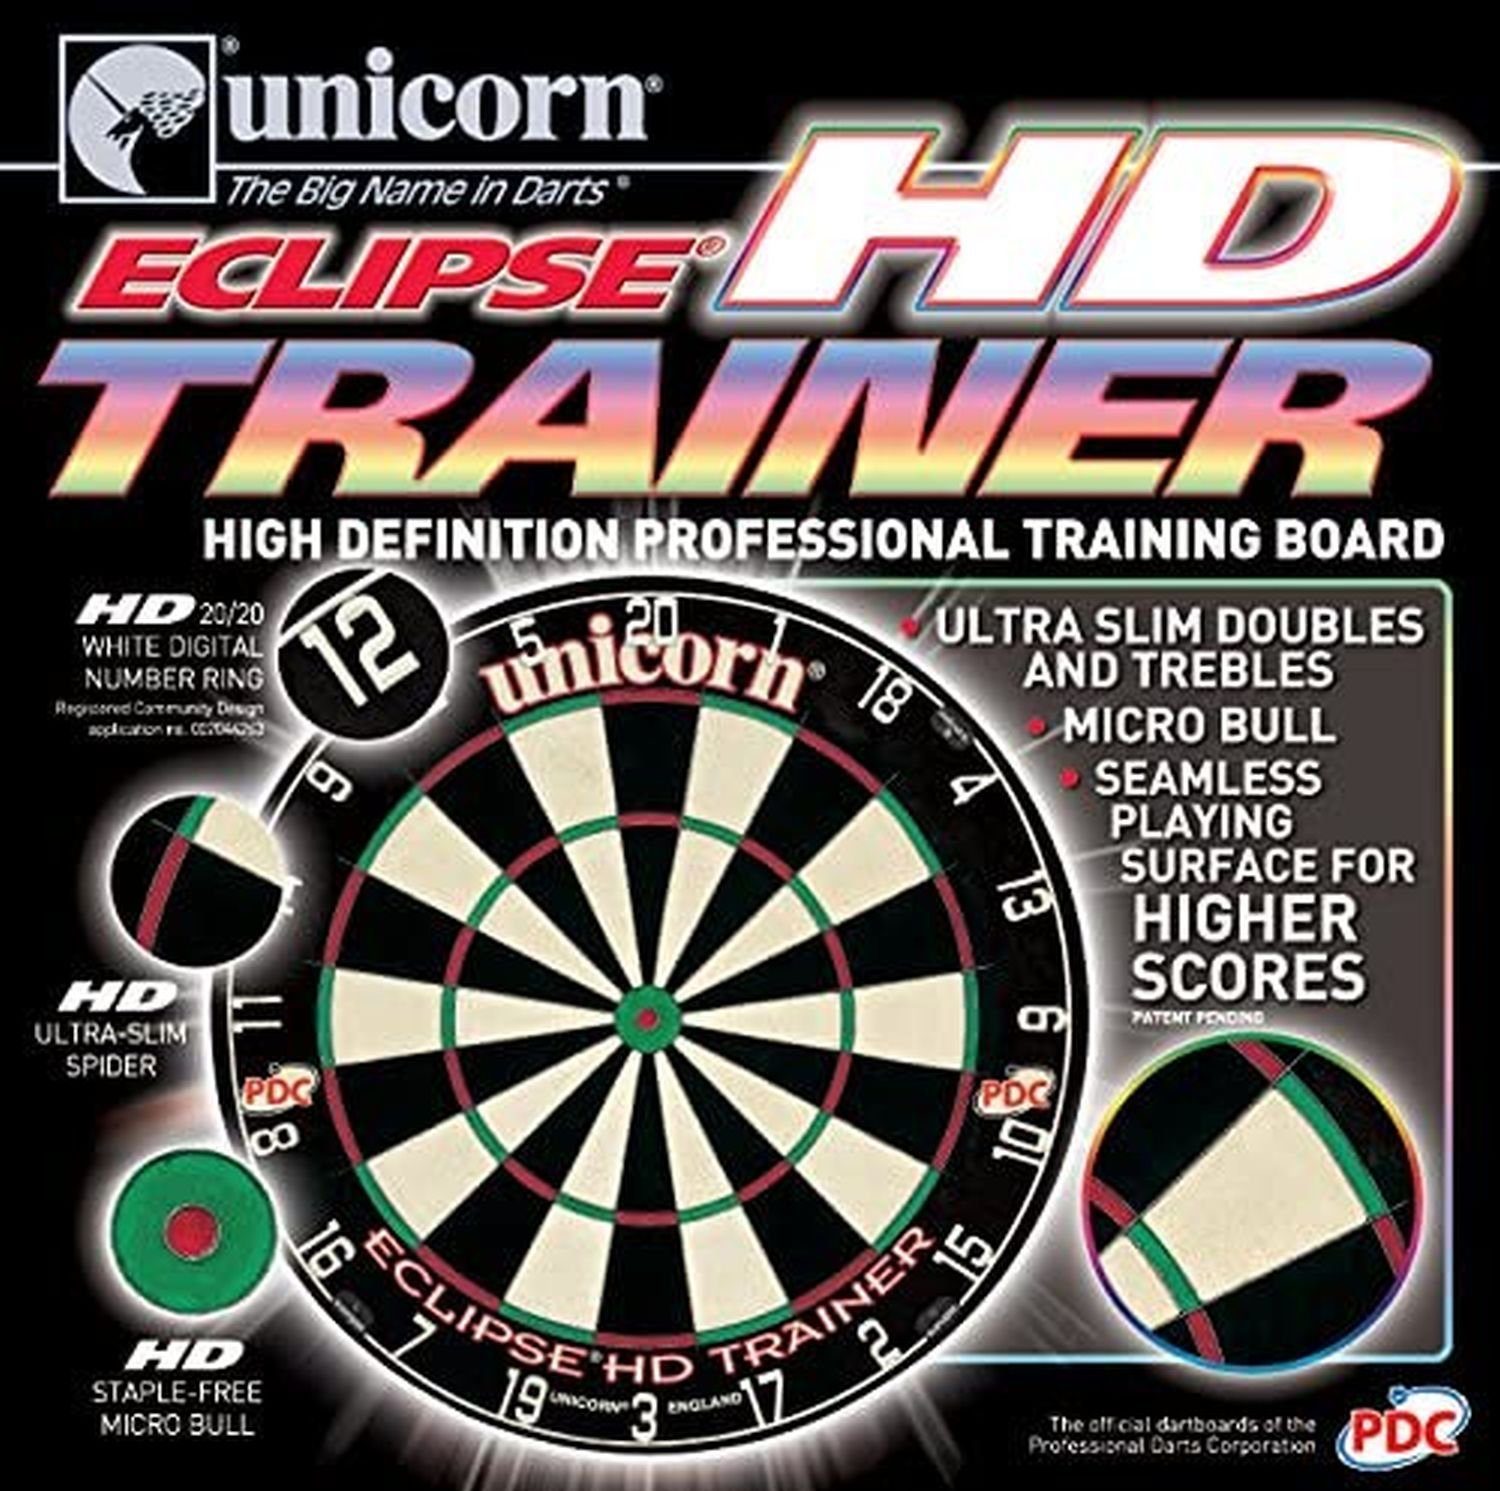 unicorn Dartscheibe Eclipse Bristle Trainer Board, Board Darts HD Scheibe Dart Dartboard